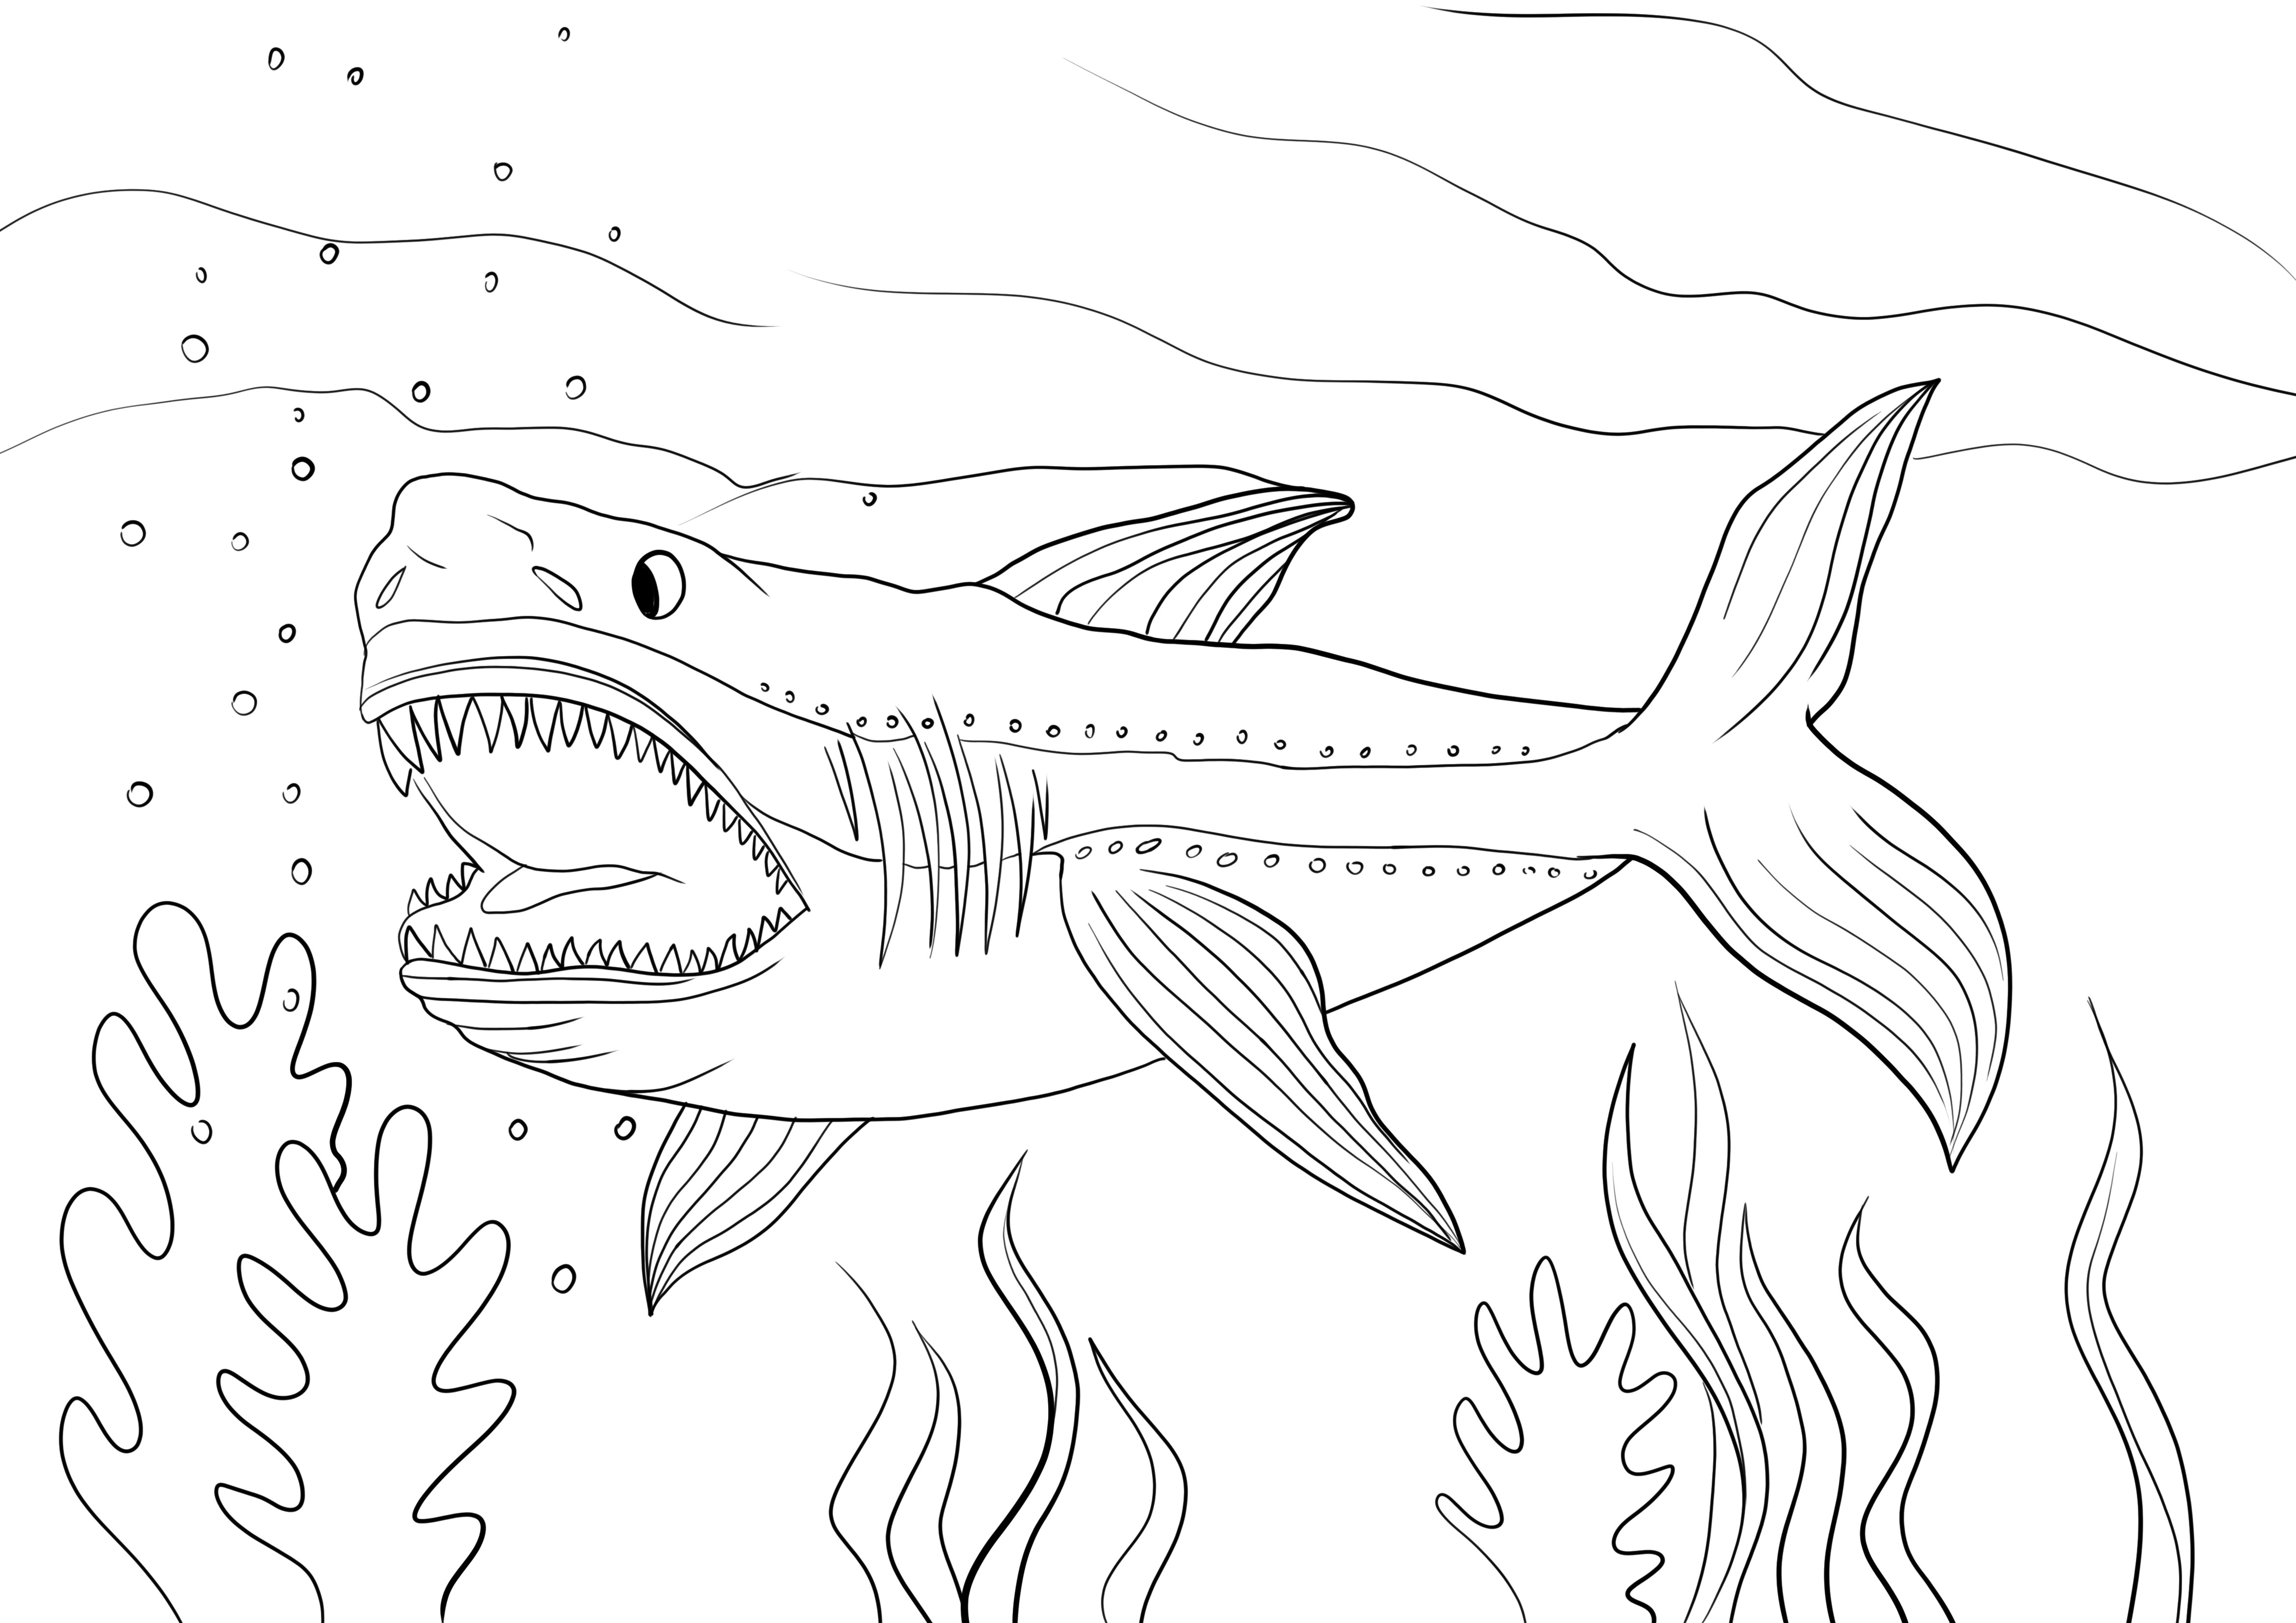 Megalodon köpekbalığı yazdırmak, renklendirmek veya ücretsiz indirmek için